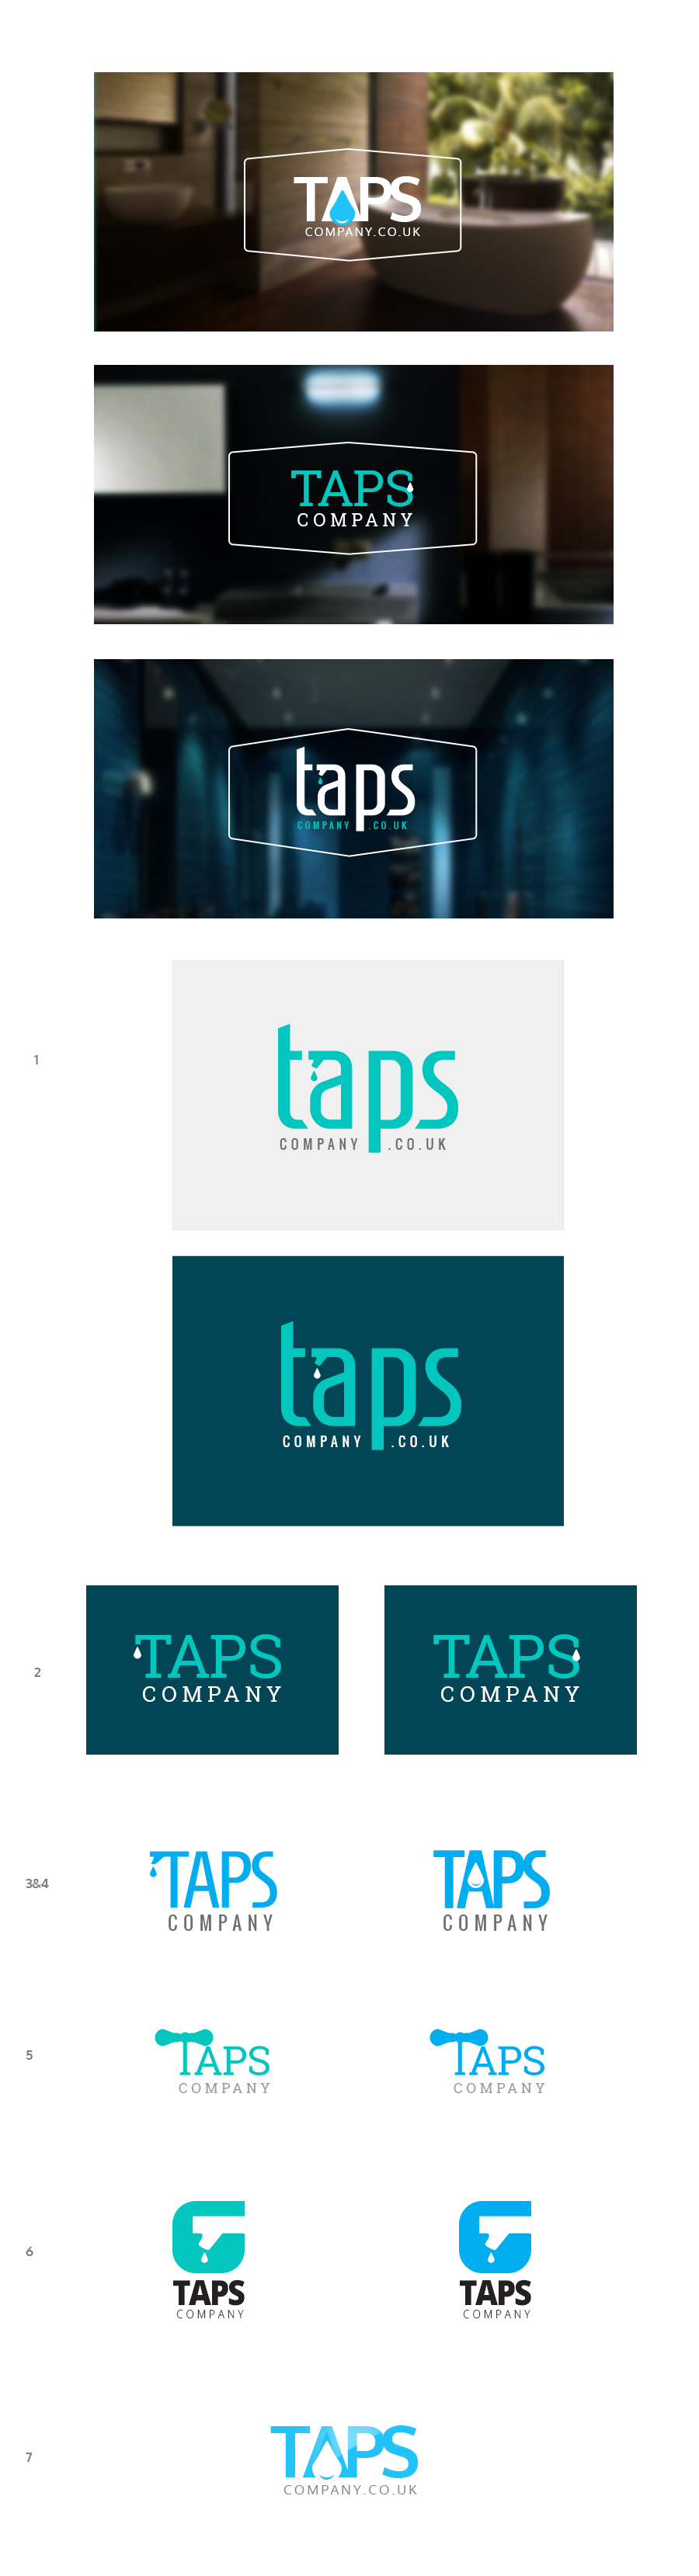 taps_logos